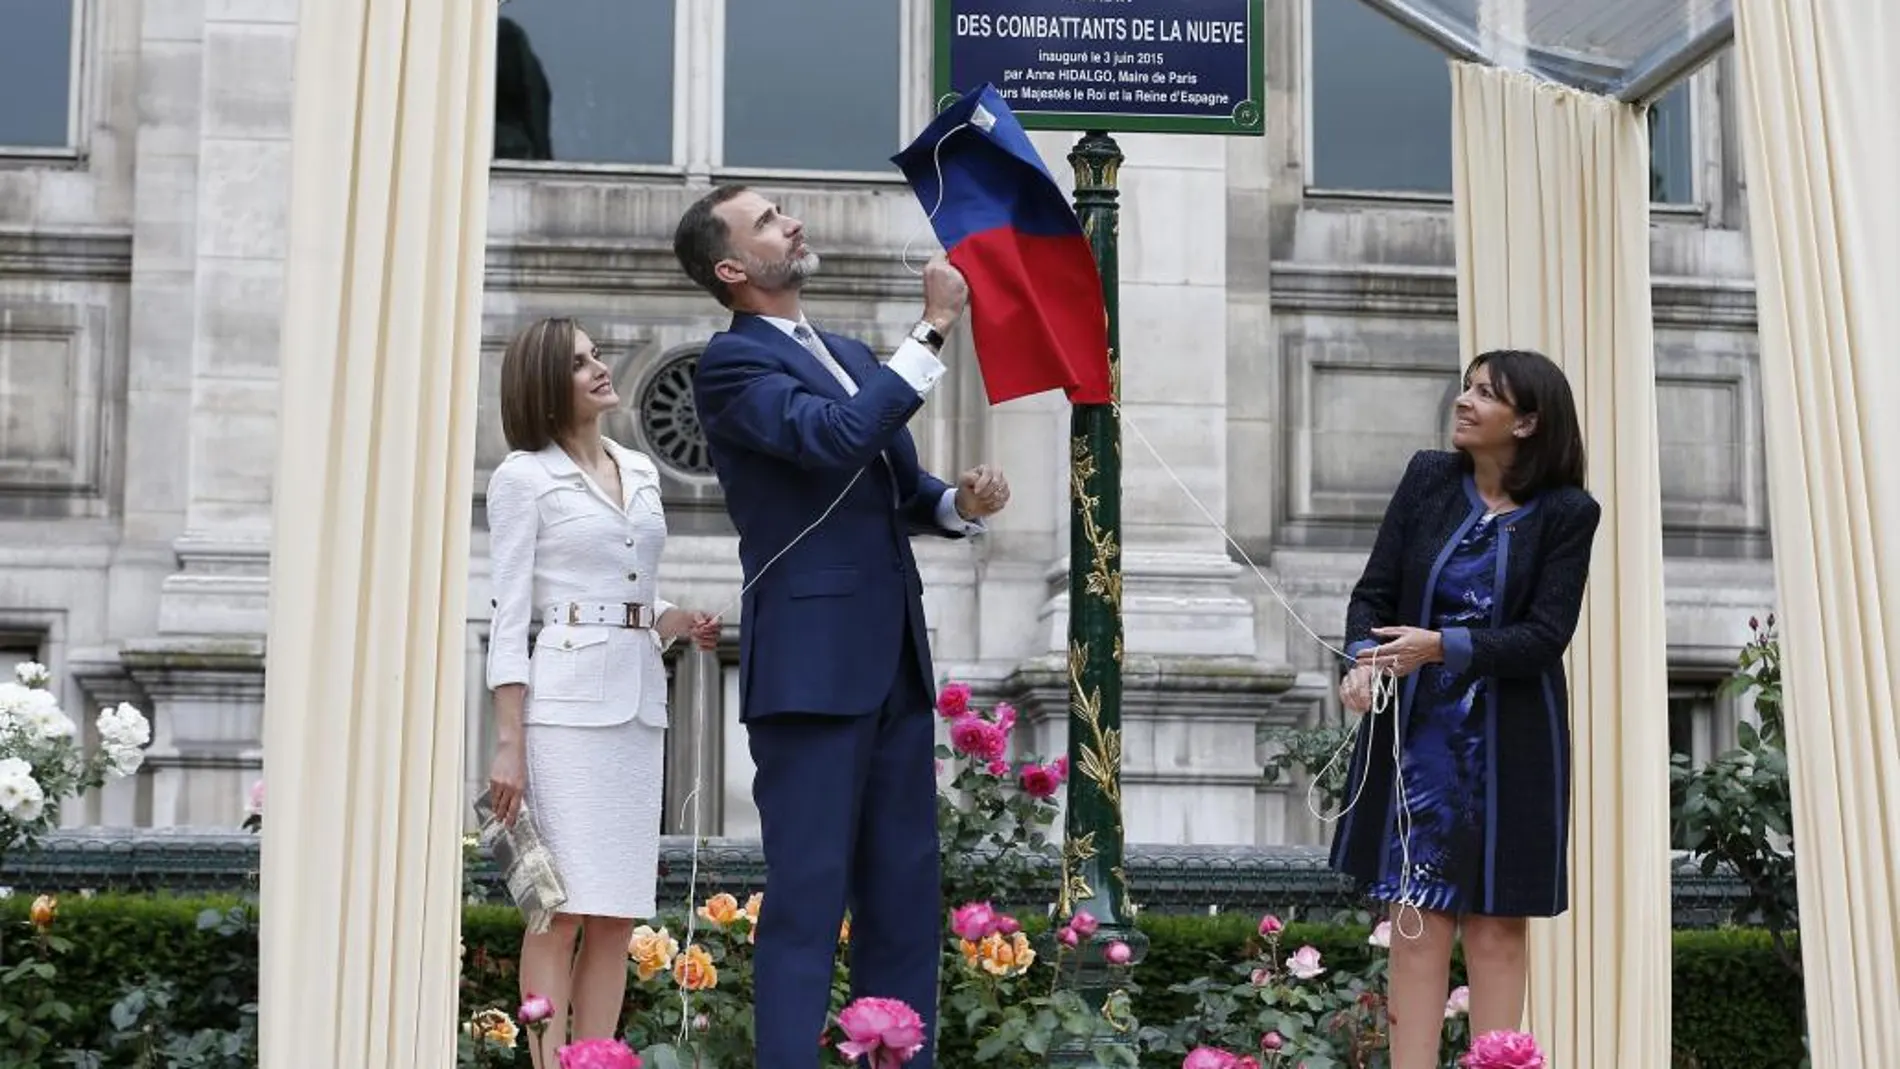 Los Reyes y la alcaldesa de París, Anne Hidalgo, descubren una placa durante la ceremonia inaugural del "Jardín de los combatientes de La Nueve, liberadores del Ayuntamiento de París el 25 de agosto de 1945"en el Ayuntamiento de París